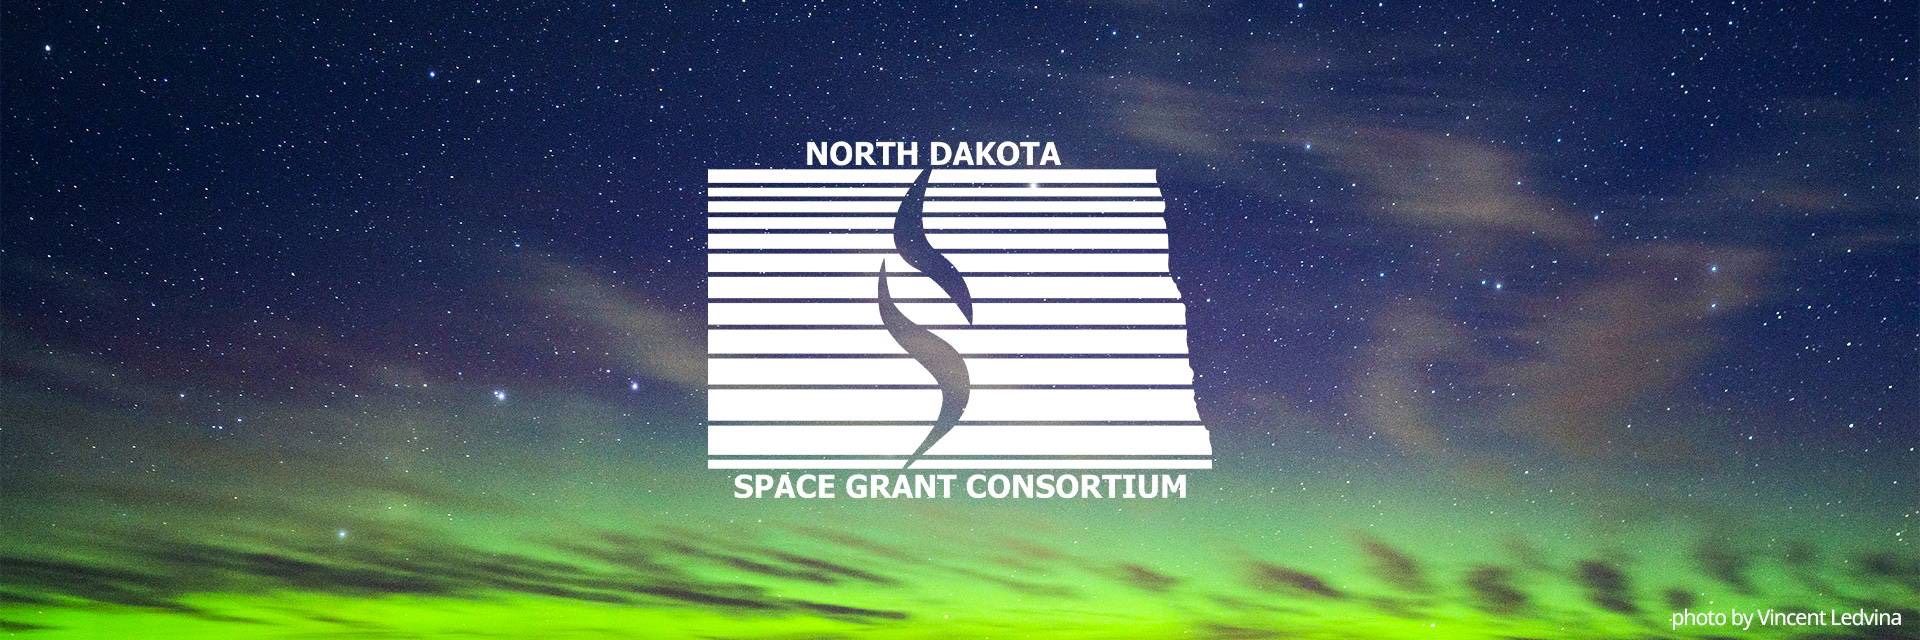 North Dakota Space Grant Consortium